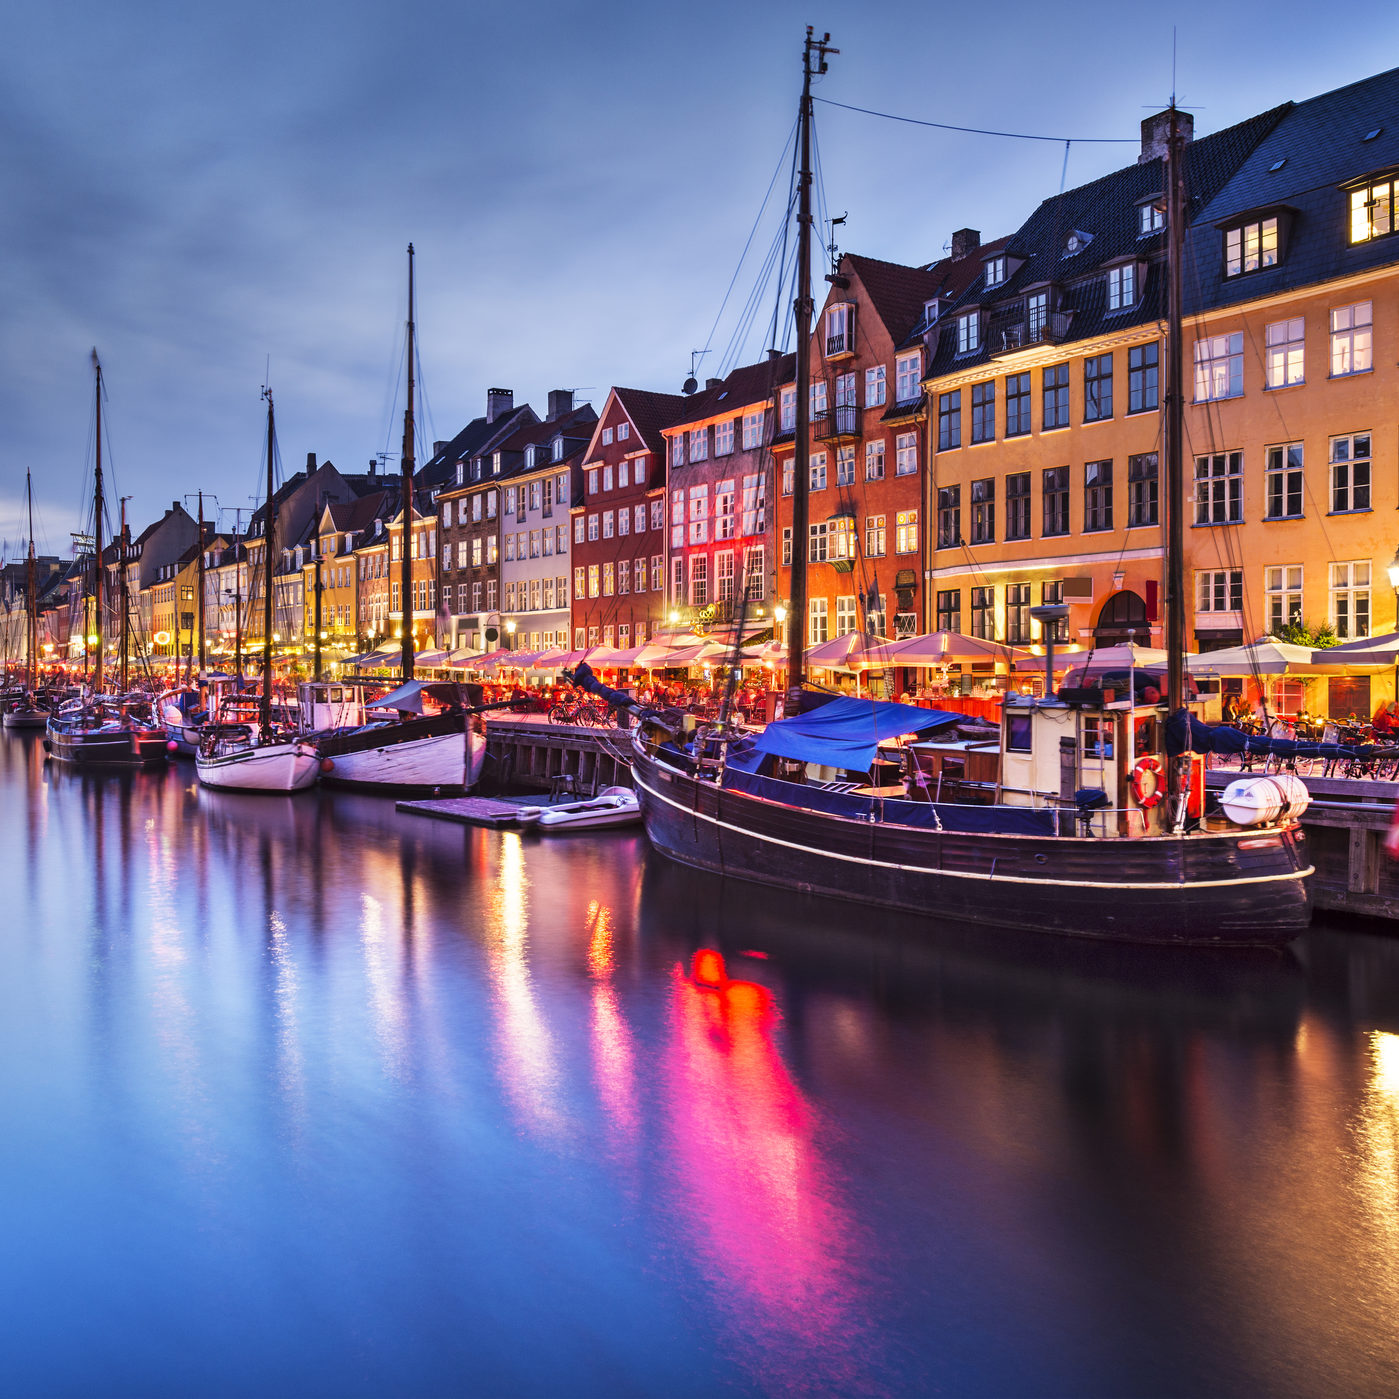 6-night Copenhagen & Amsterdam escape with airfare & hotel from $822